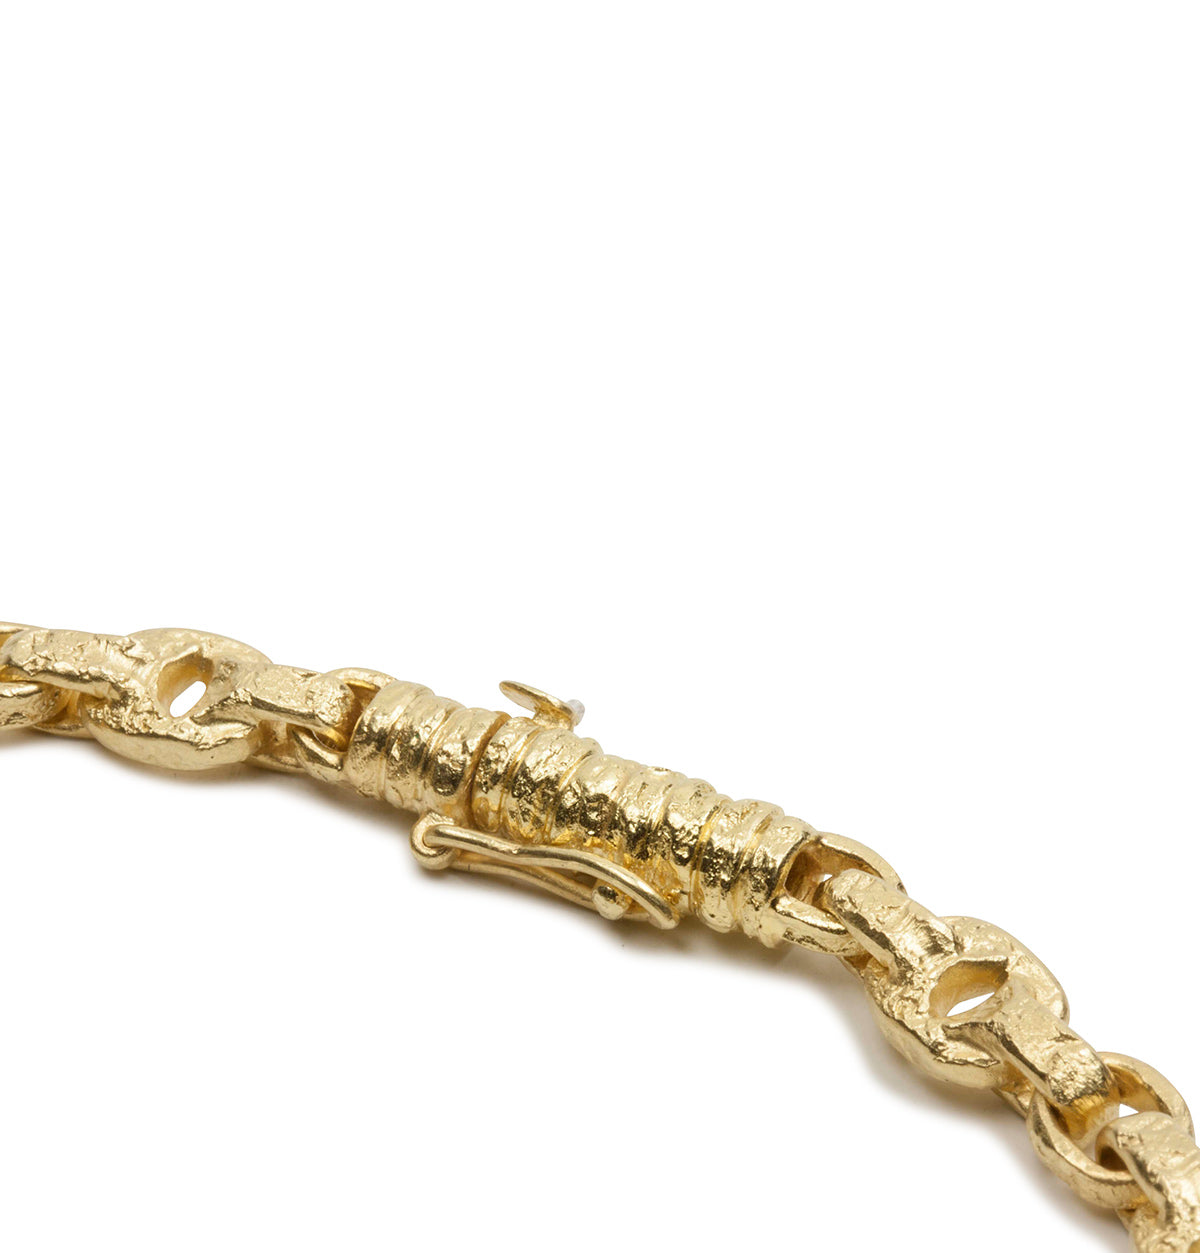 Türkis besetztes Armband aus 750 Gelbgold mit Struktur